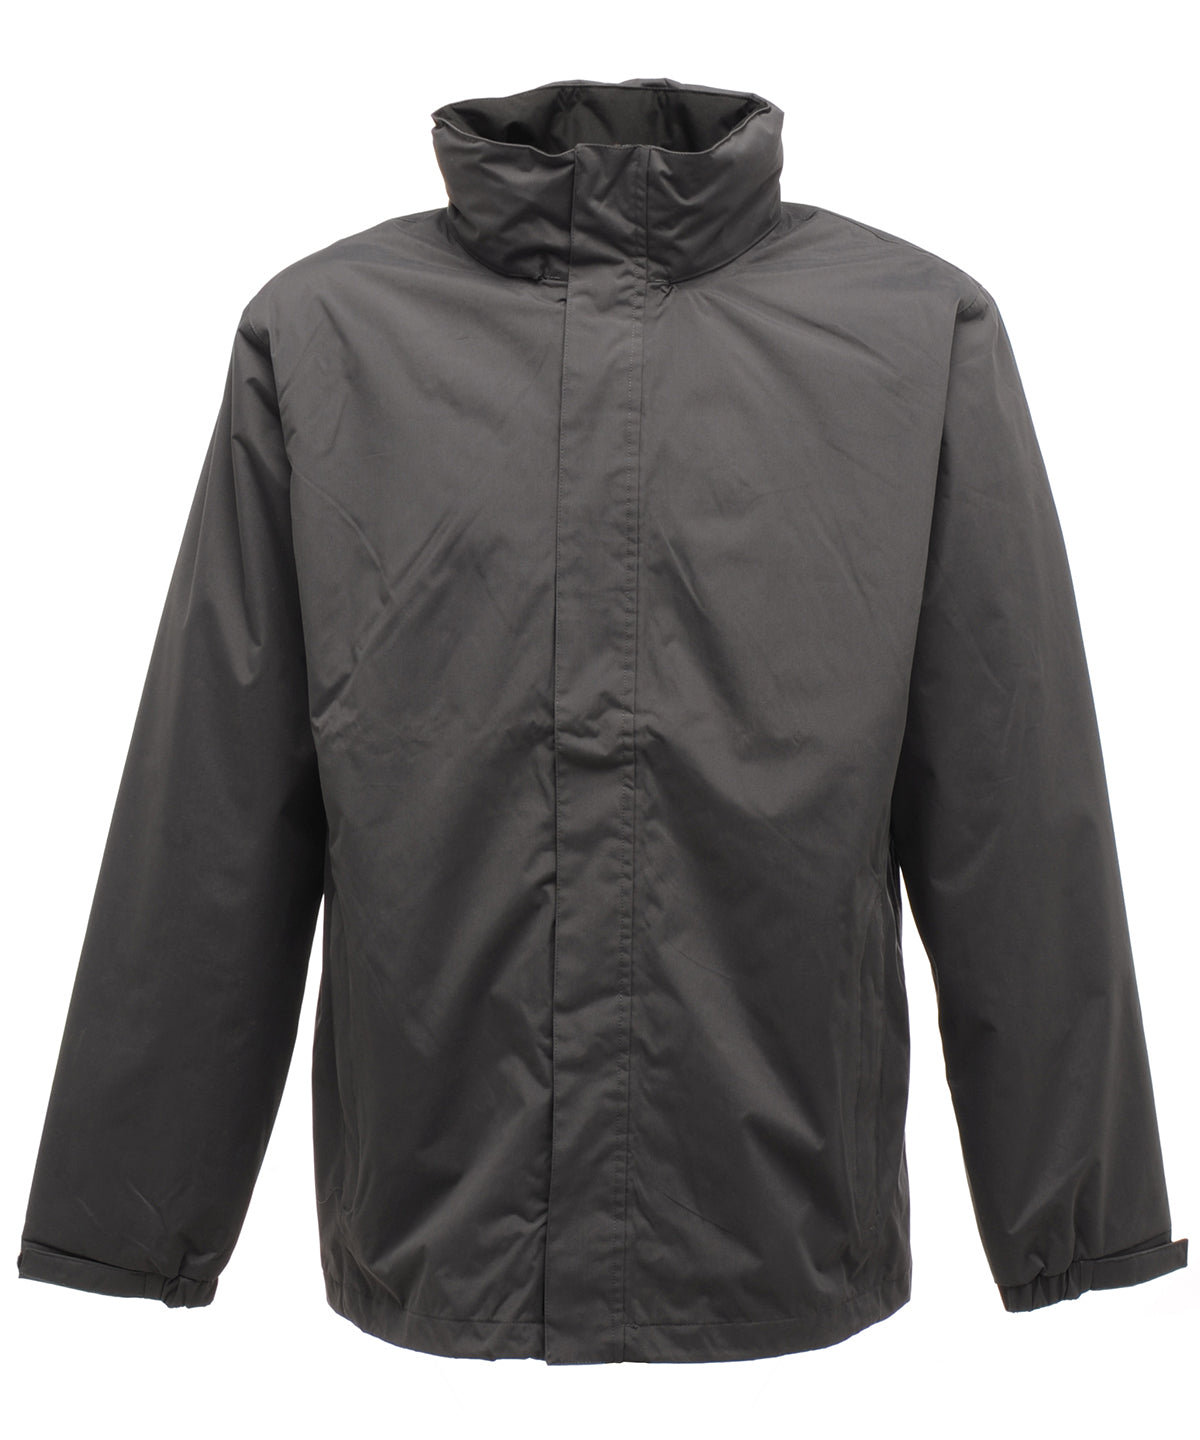 Jakkar - Ardmore Waterproof Shell Jacket